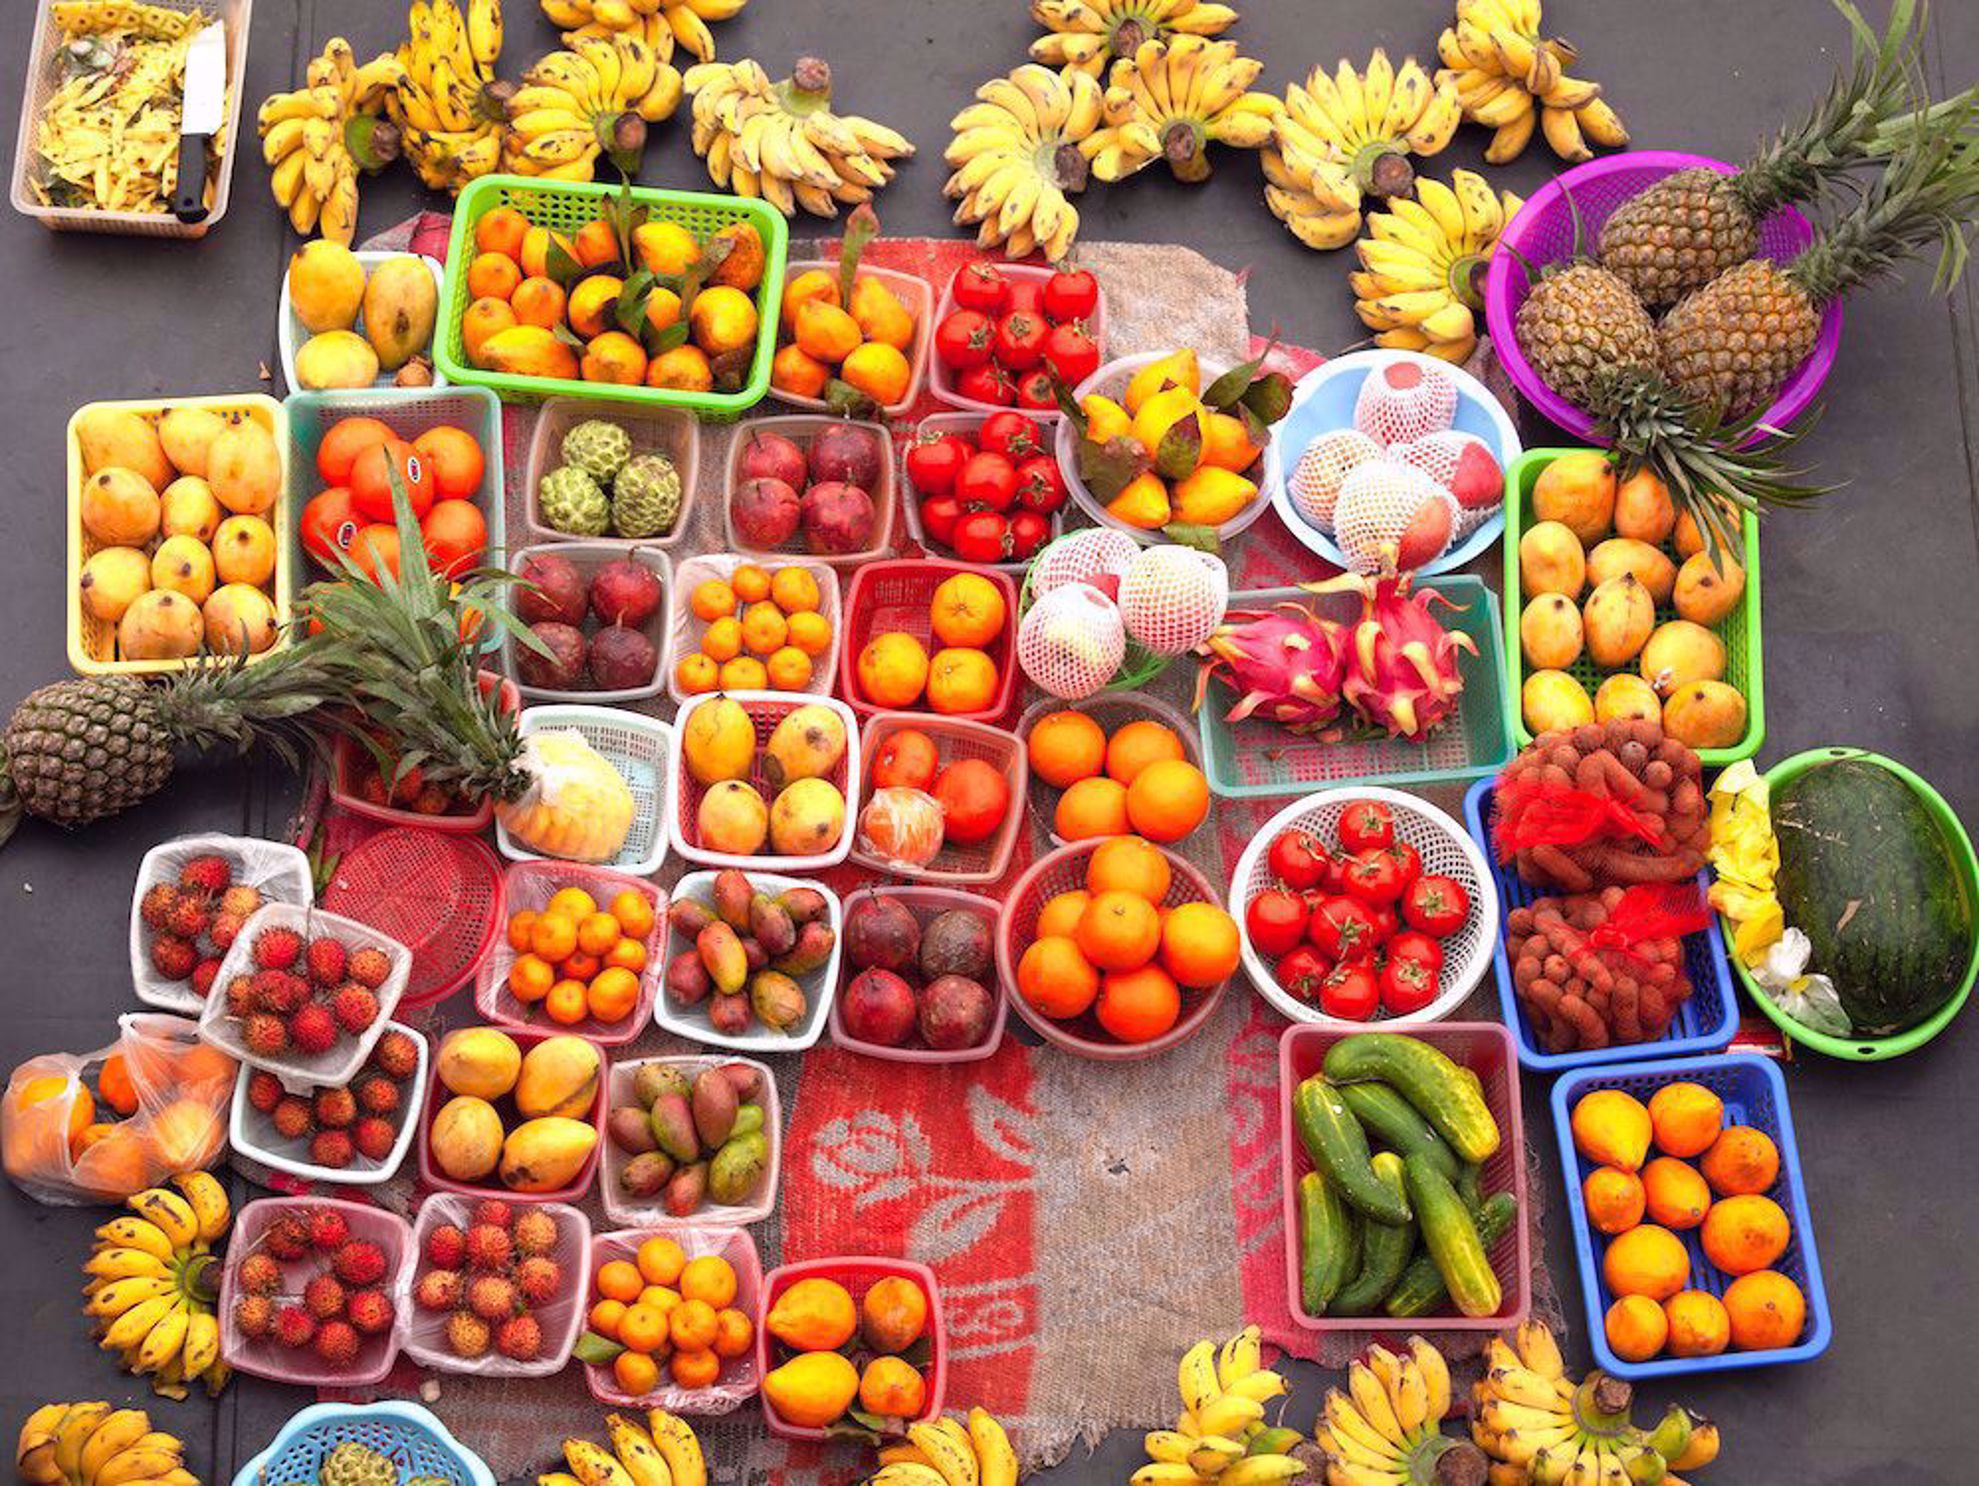 Fruits at the market